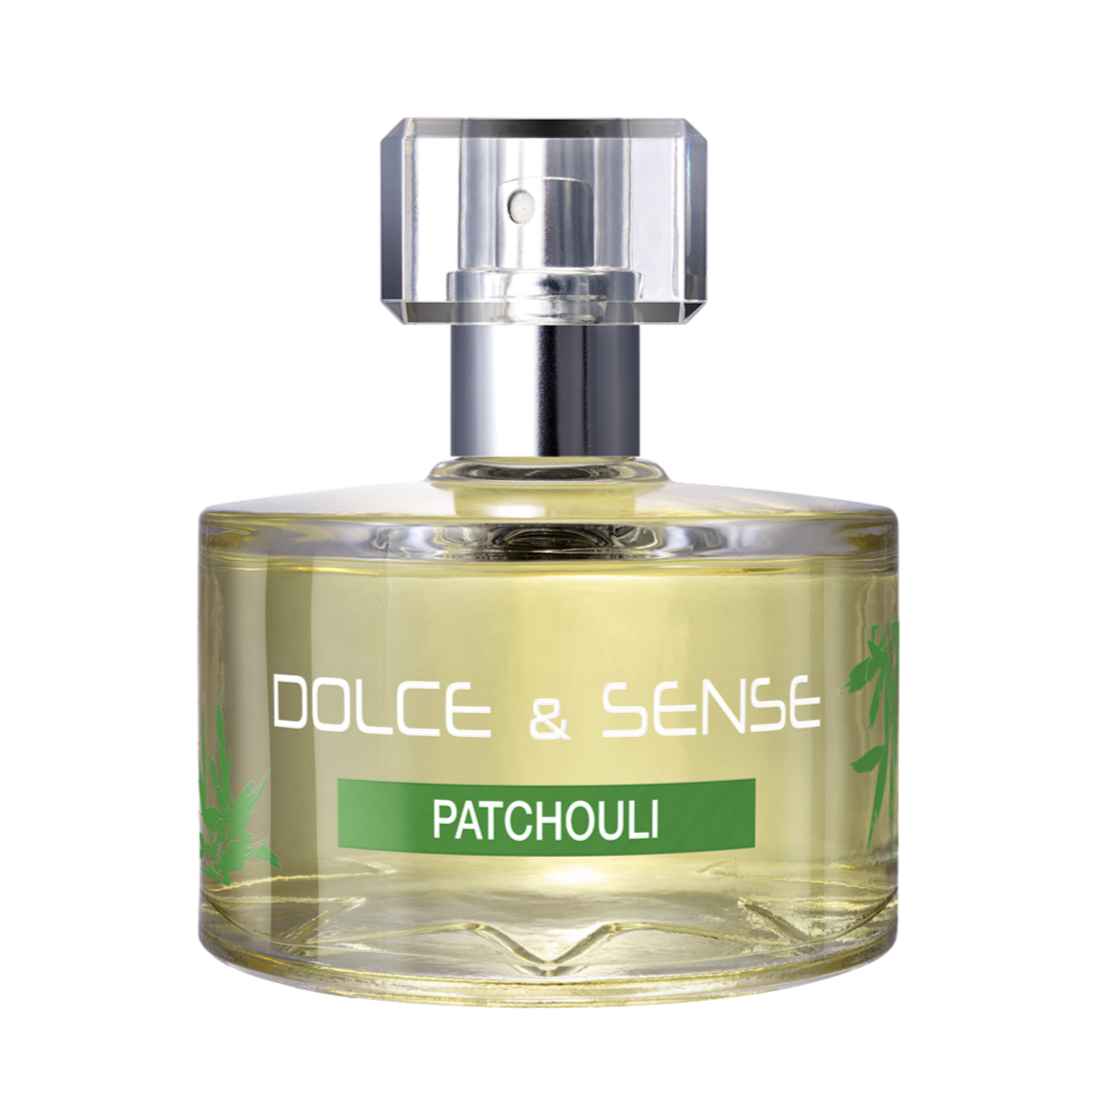 Dolce & Sense Patchouli Perfume For Women 60 ml